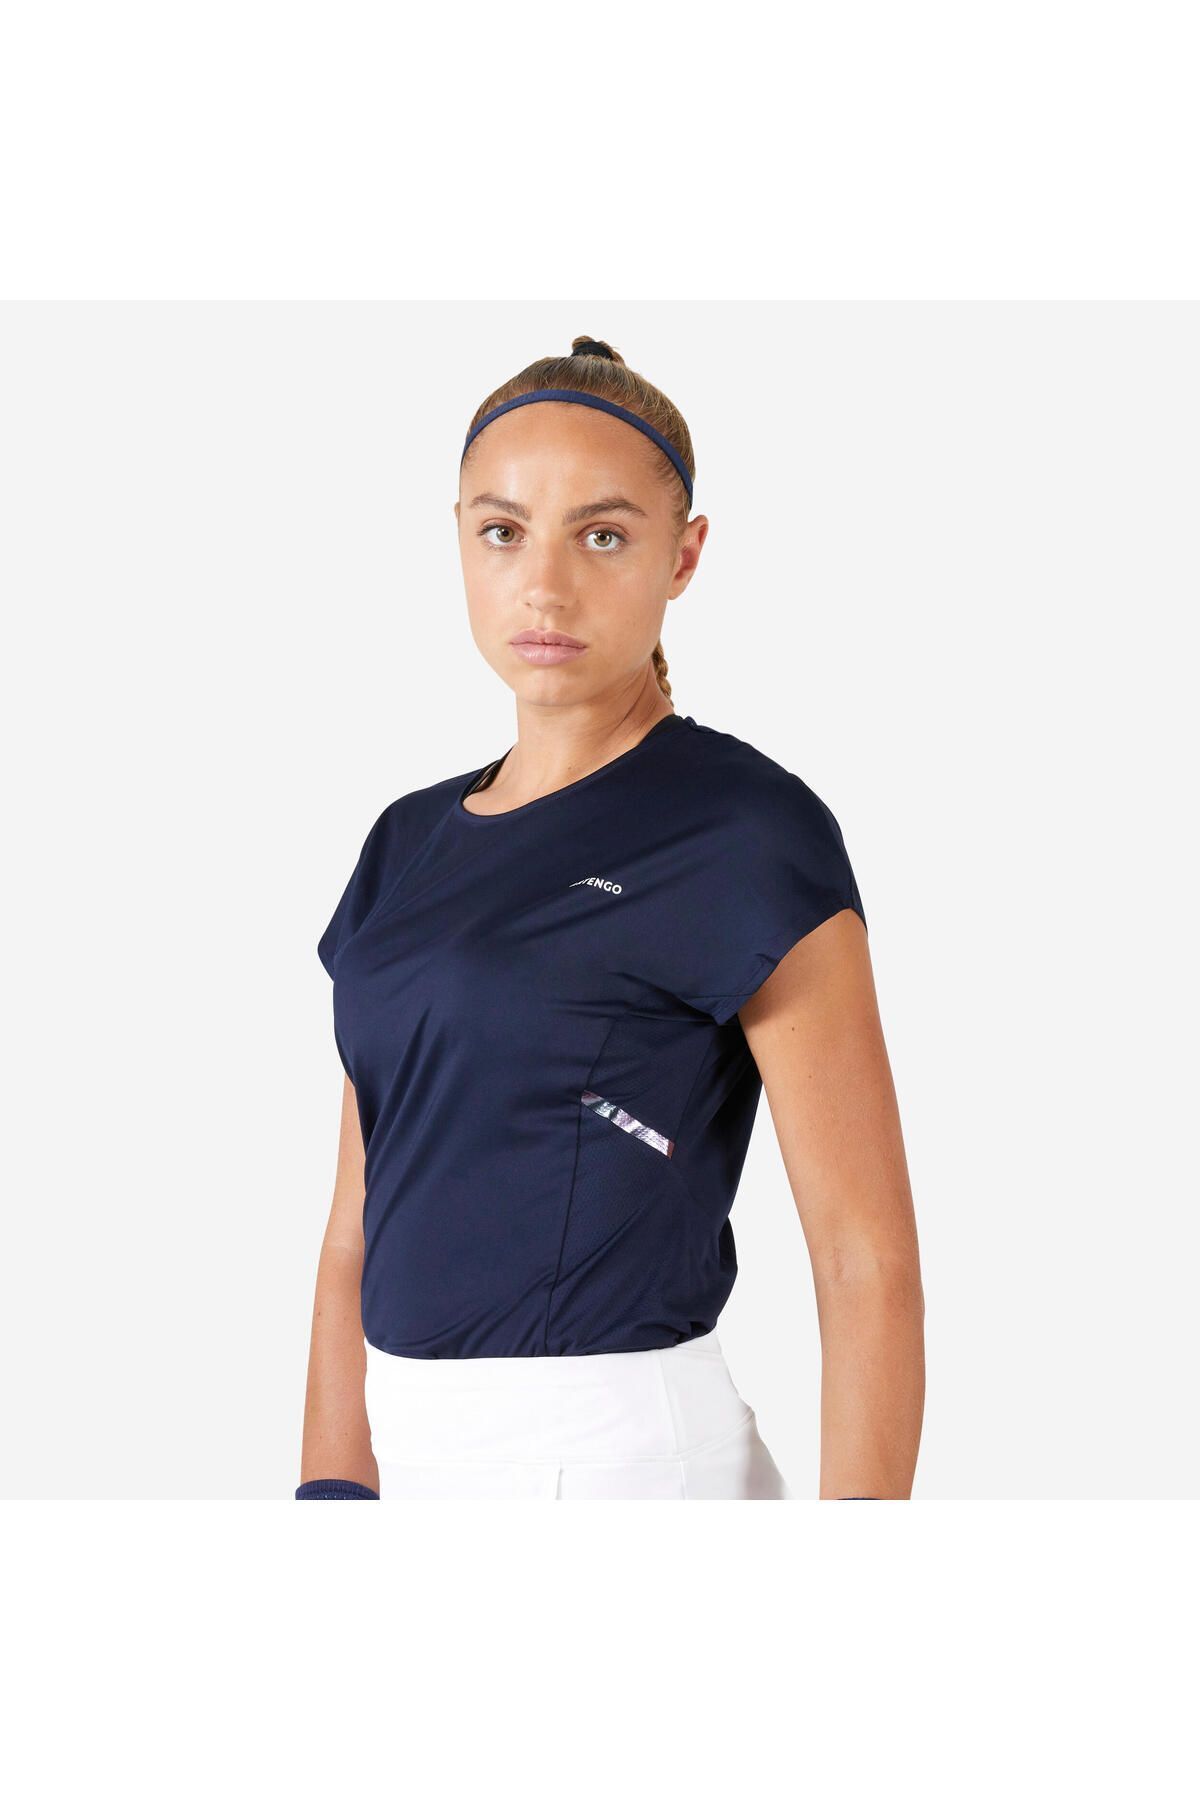 Decathlon Kadın Tenis Tişörtü - Mavi/siyah - Dry Soft 500